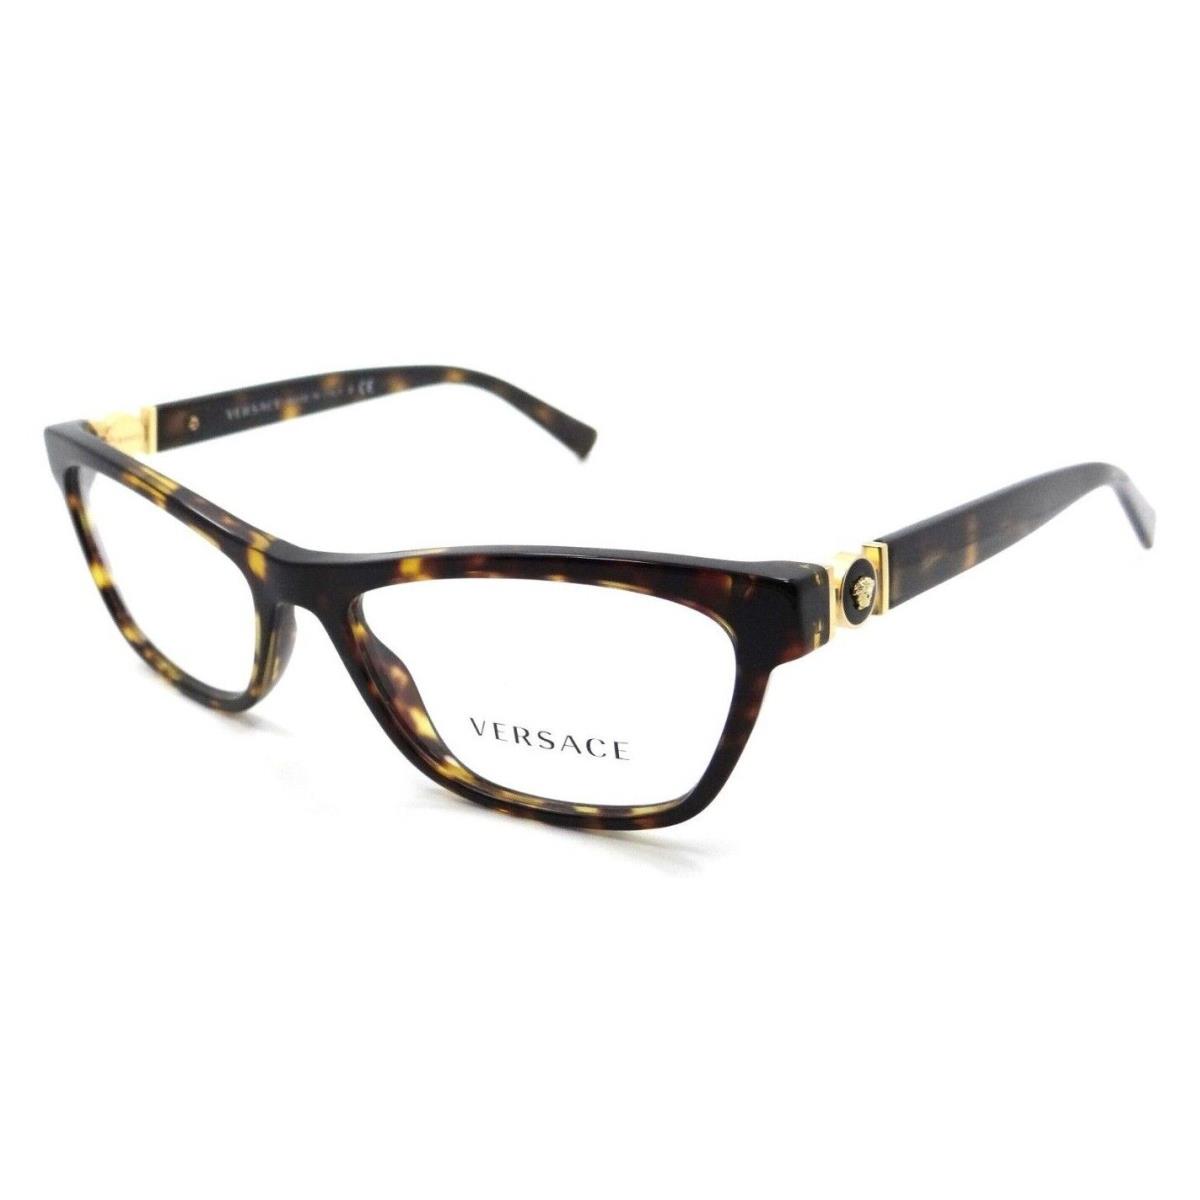 Versace Eyeglasses Frames VE 3272 108 52-16-140 Dark Havana Made in Italy